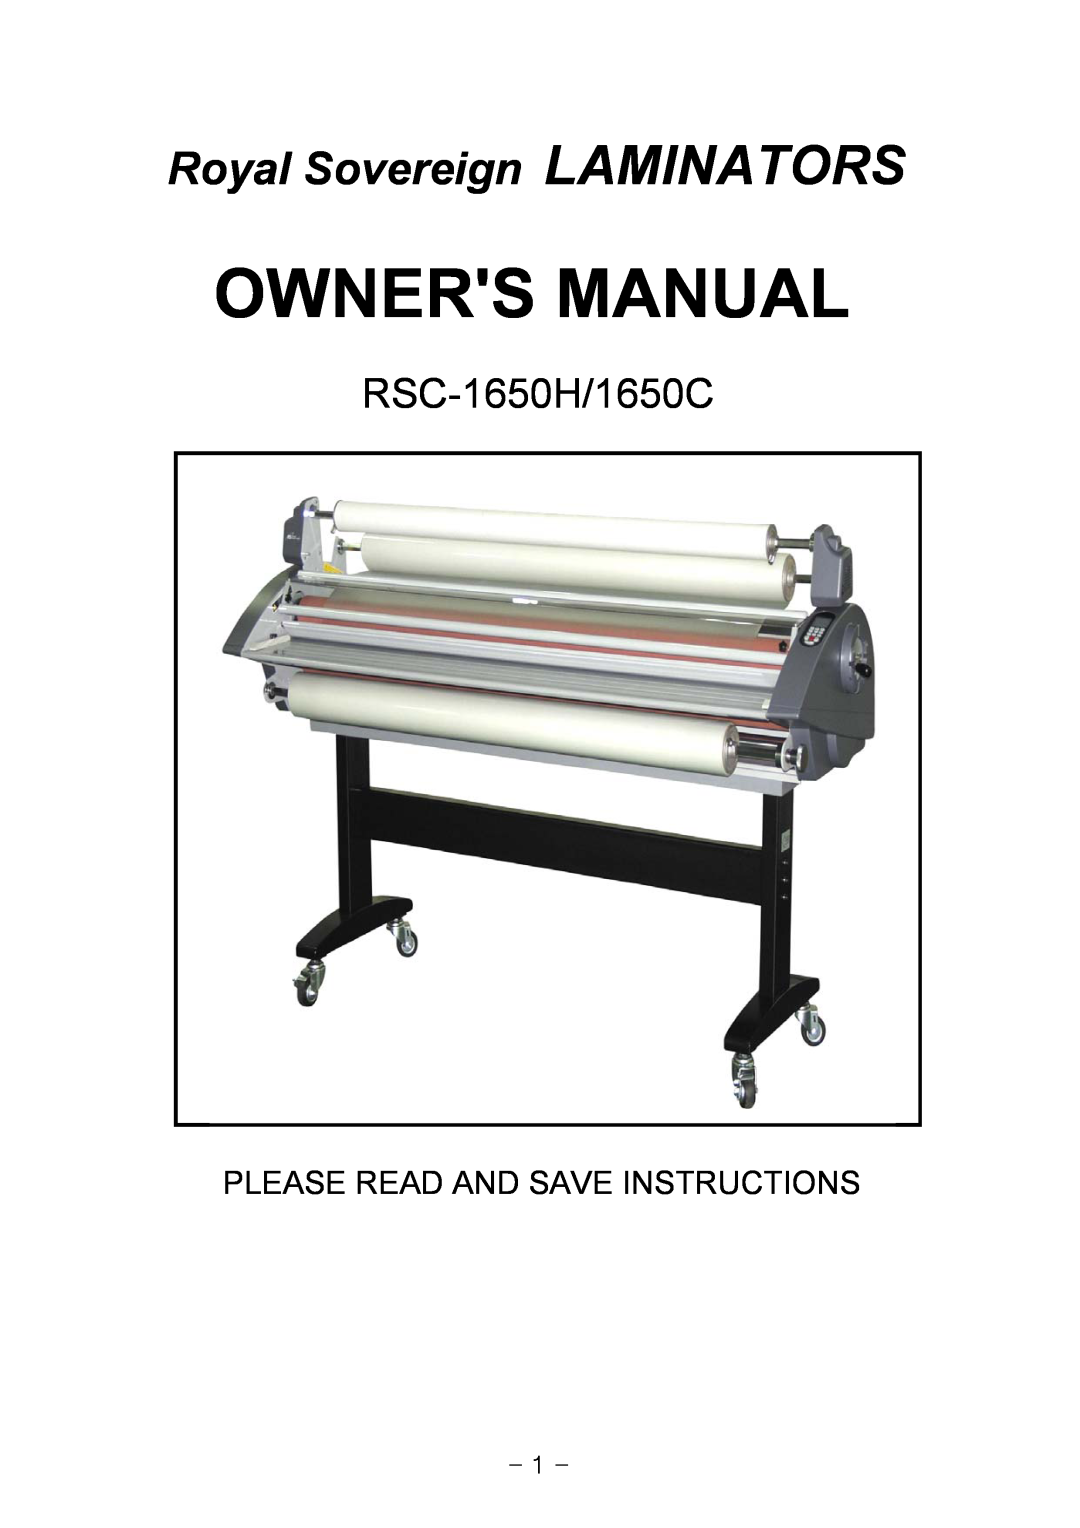 Royal Sovereign owner manual Owners Manual, Royal Sovereign LAMINATORS, RSC-1650H/1650C 